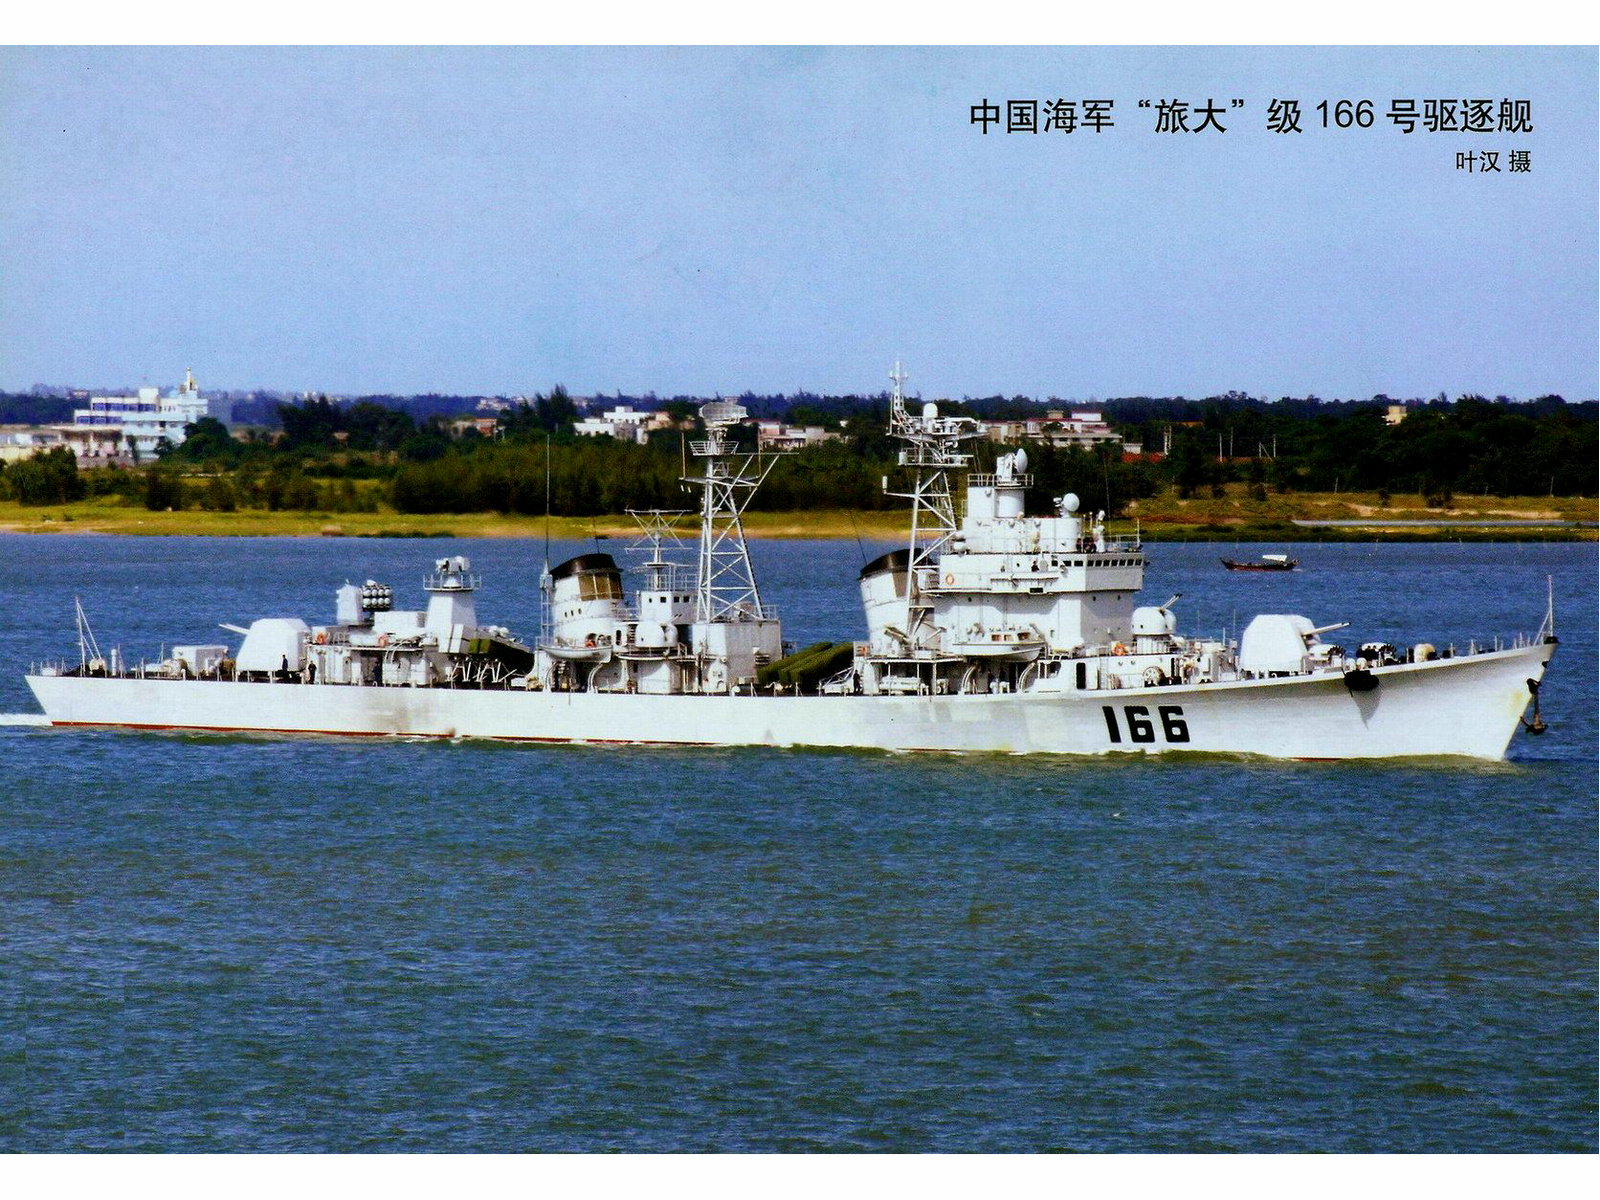 珠海號驅逐艦(166珠海號飛彈驅逐艦)